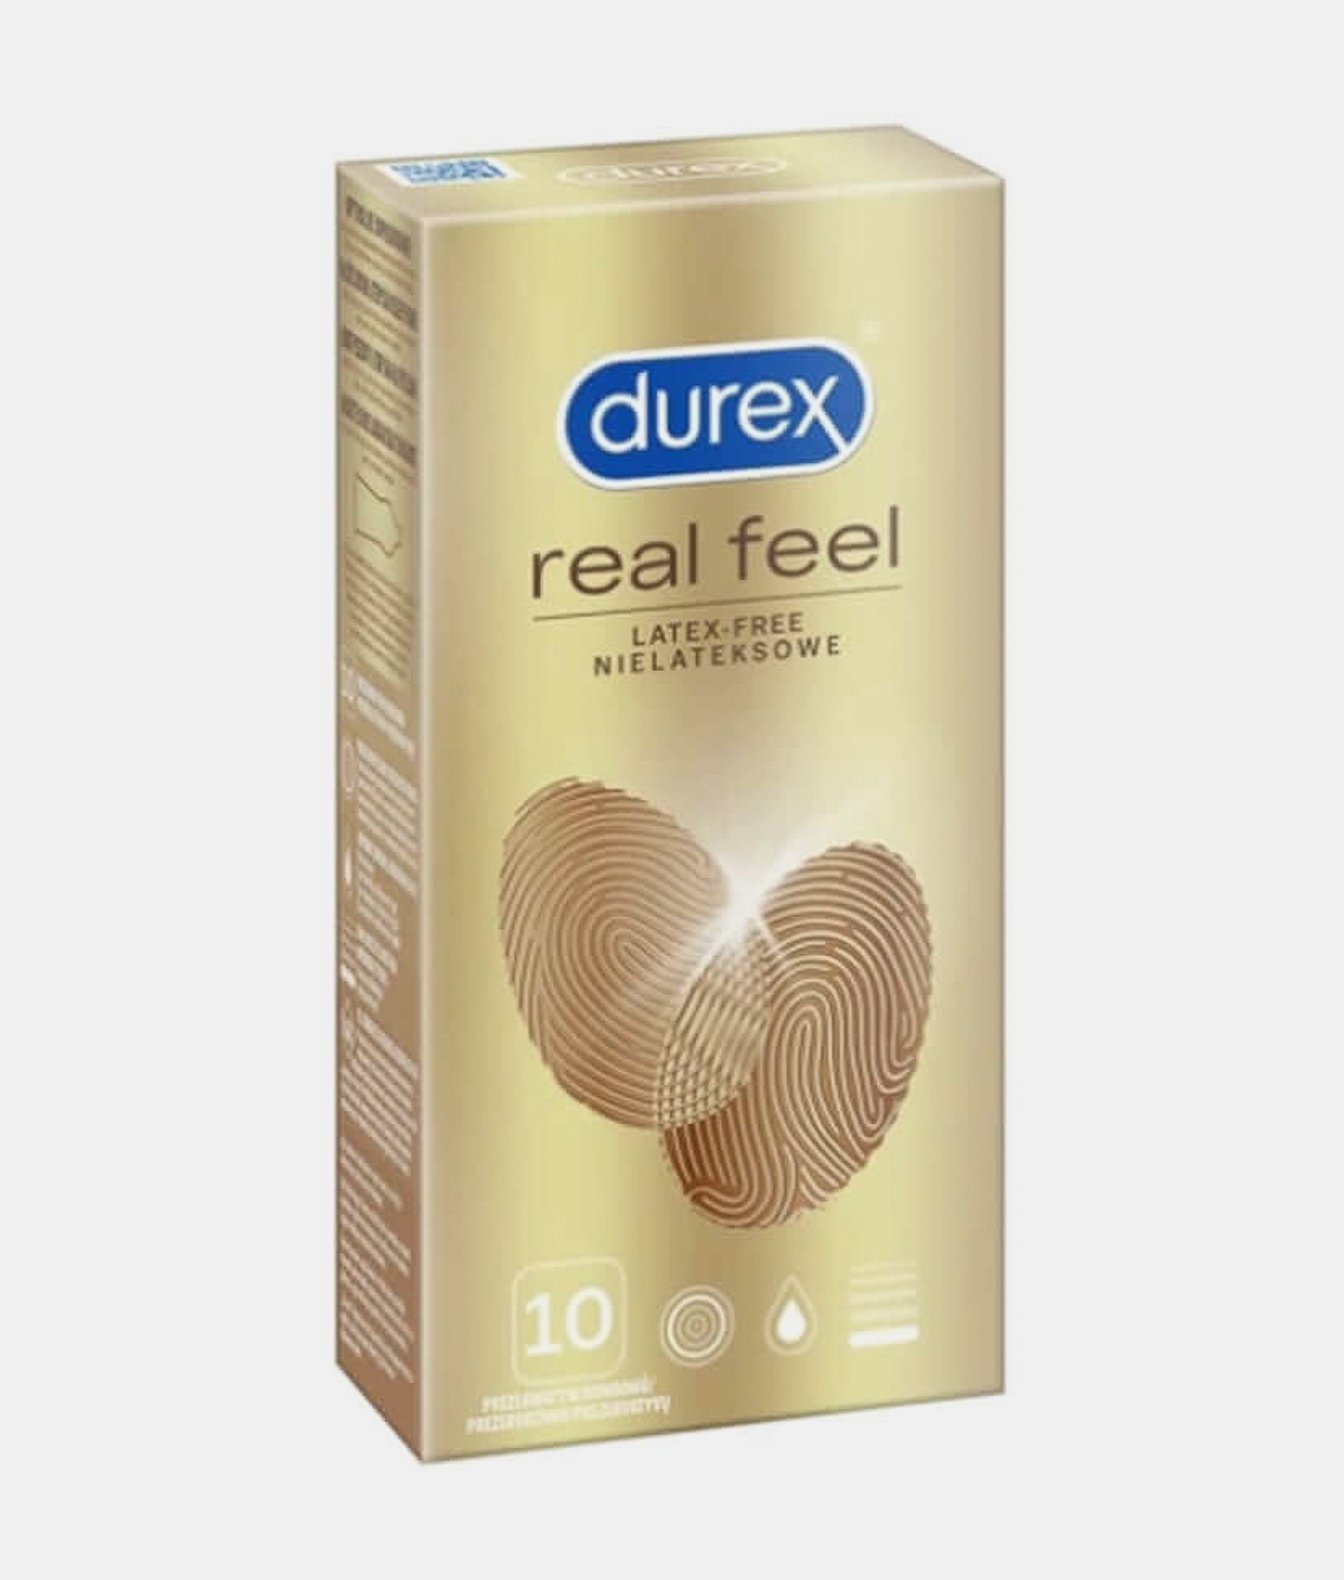 Durex Real Feel prezerwatywy nielateksowe